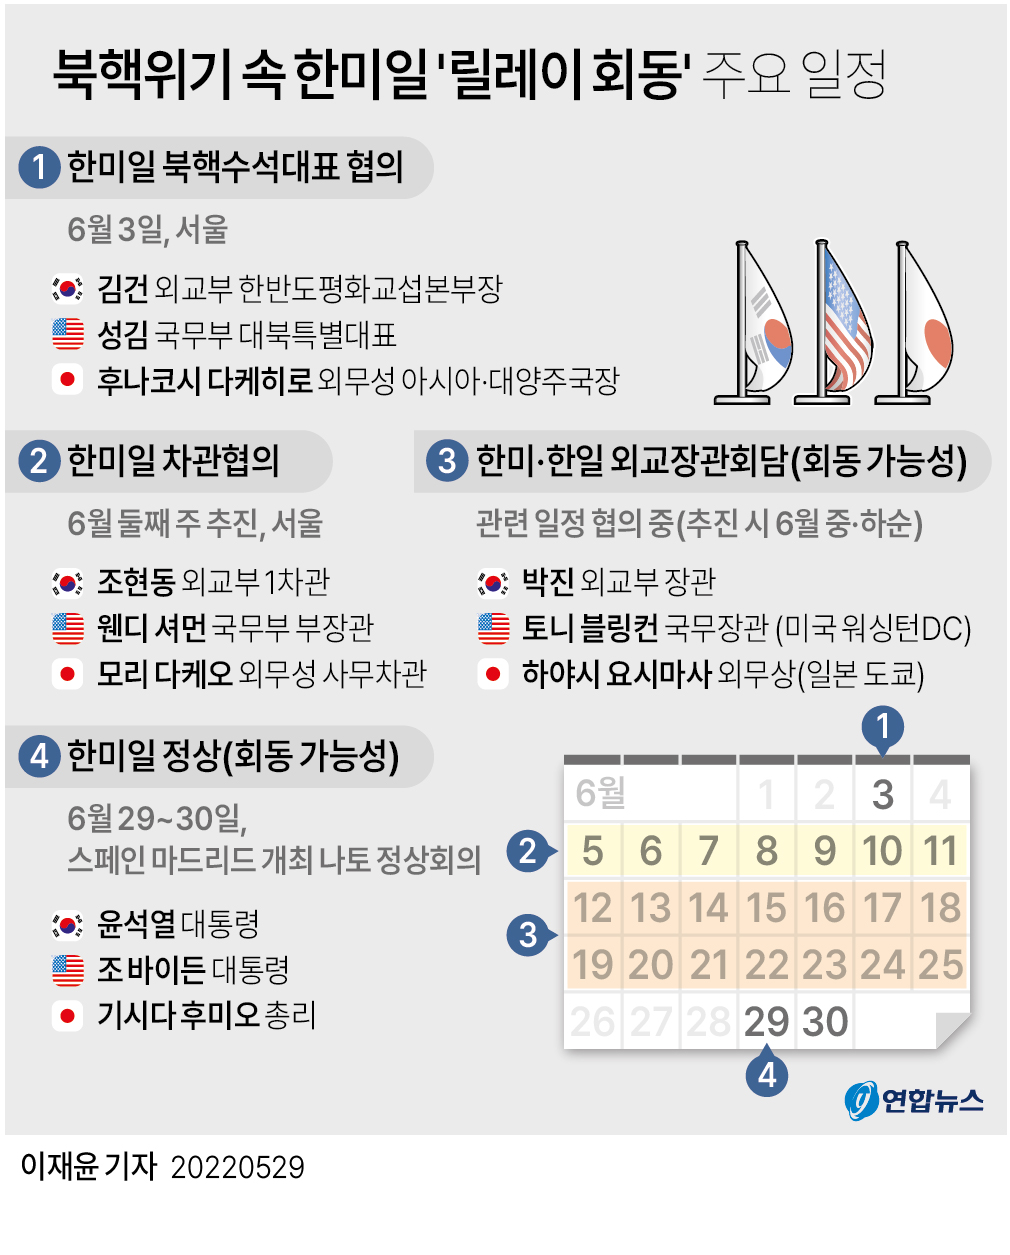  북핵위기 속 한미일 '릴레이 회동' 주요 일정